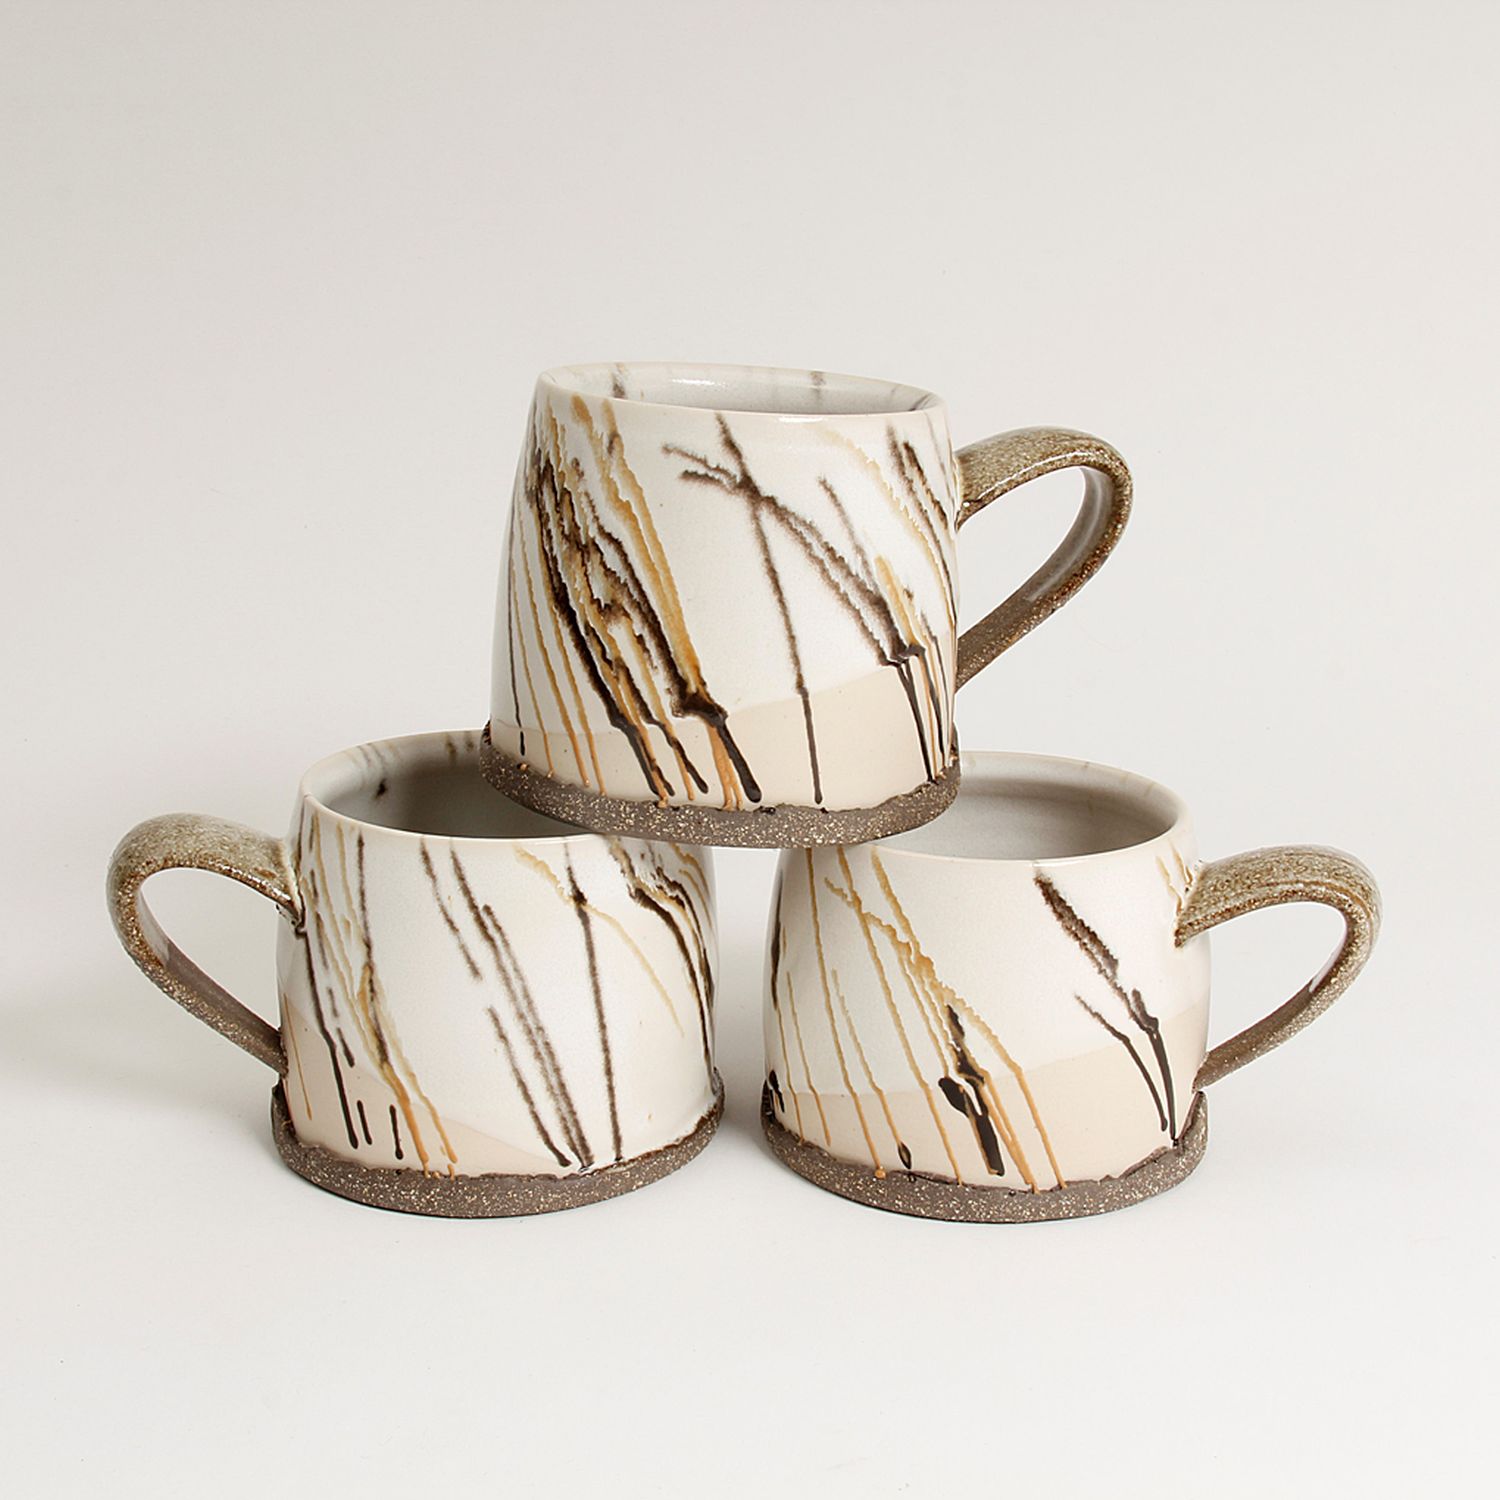 Gracia Isabel Gomez: “Cafe con Leche” White Chocolate Mug Product Image 3 of 7